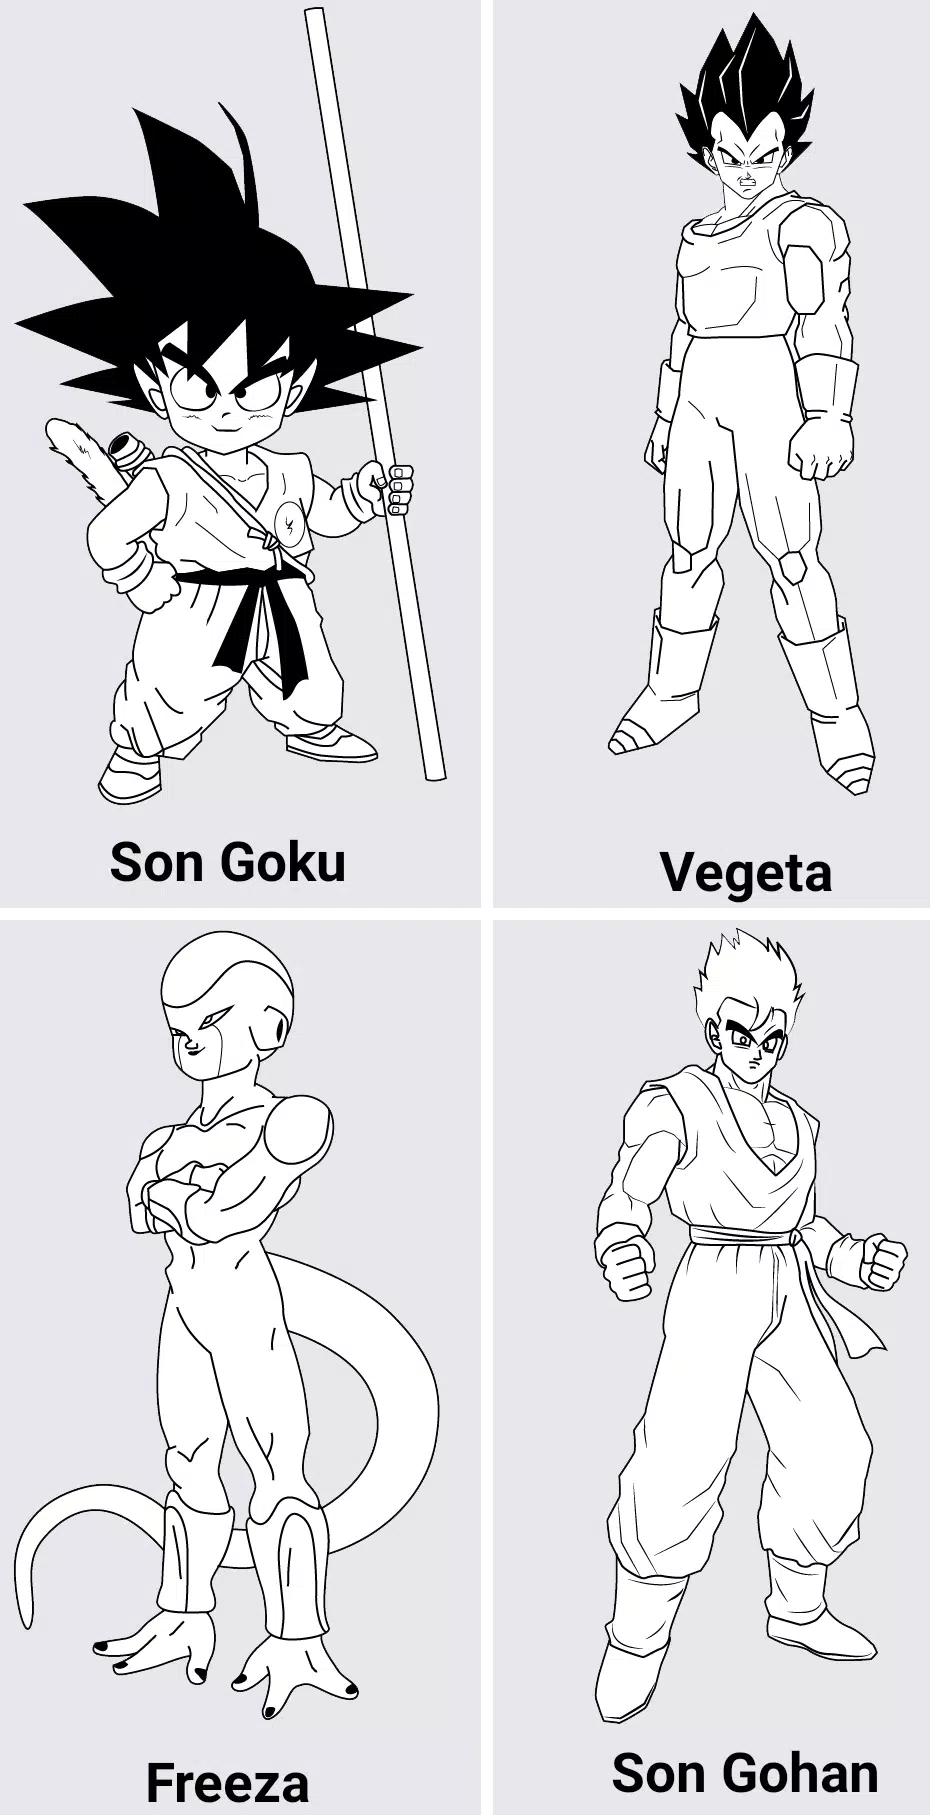 Como desenhar personagens do Dragon Ball